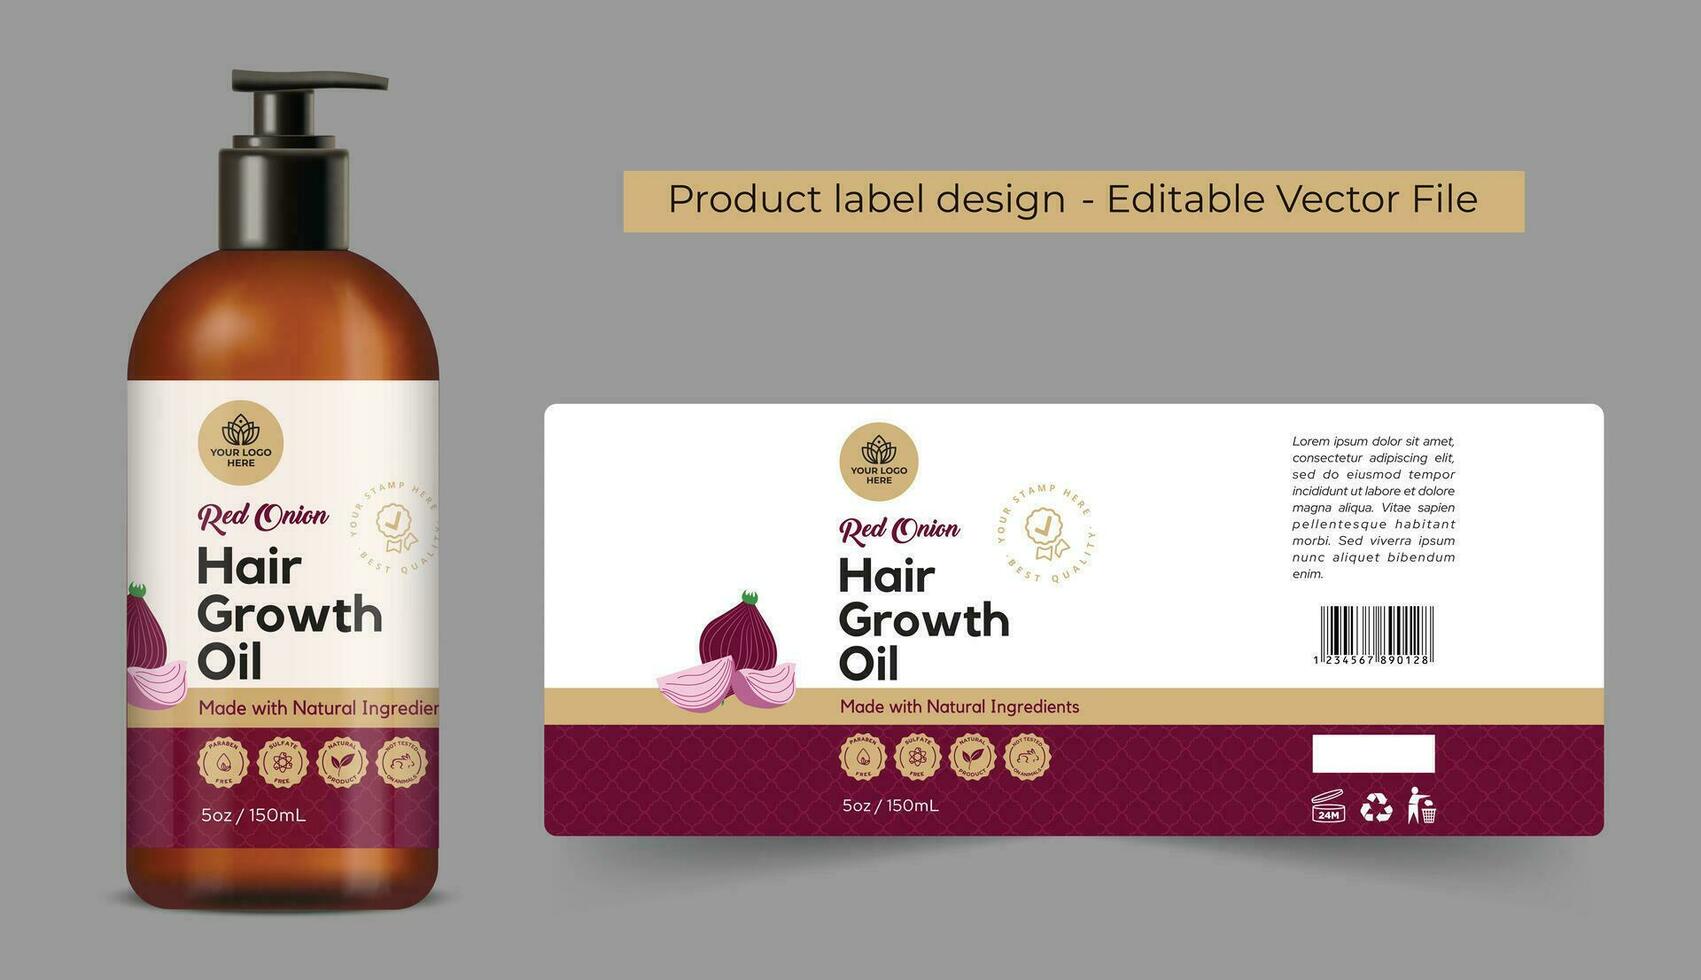 Zwiebel Haar Öl Etikette Design, Privat Etikette Design zum Zwiebel Haar Wachstum Öl Marke, Verpackung Design zum Öl Etikett, Flasche Etikette Design, gemacht mit natürlich Zutaten, editierbar Vorlage Vektor Datei